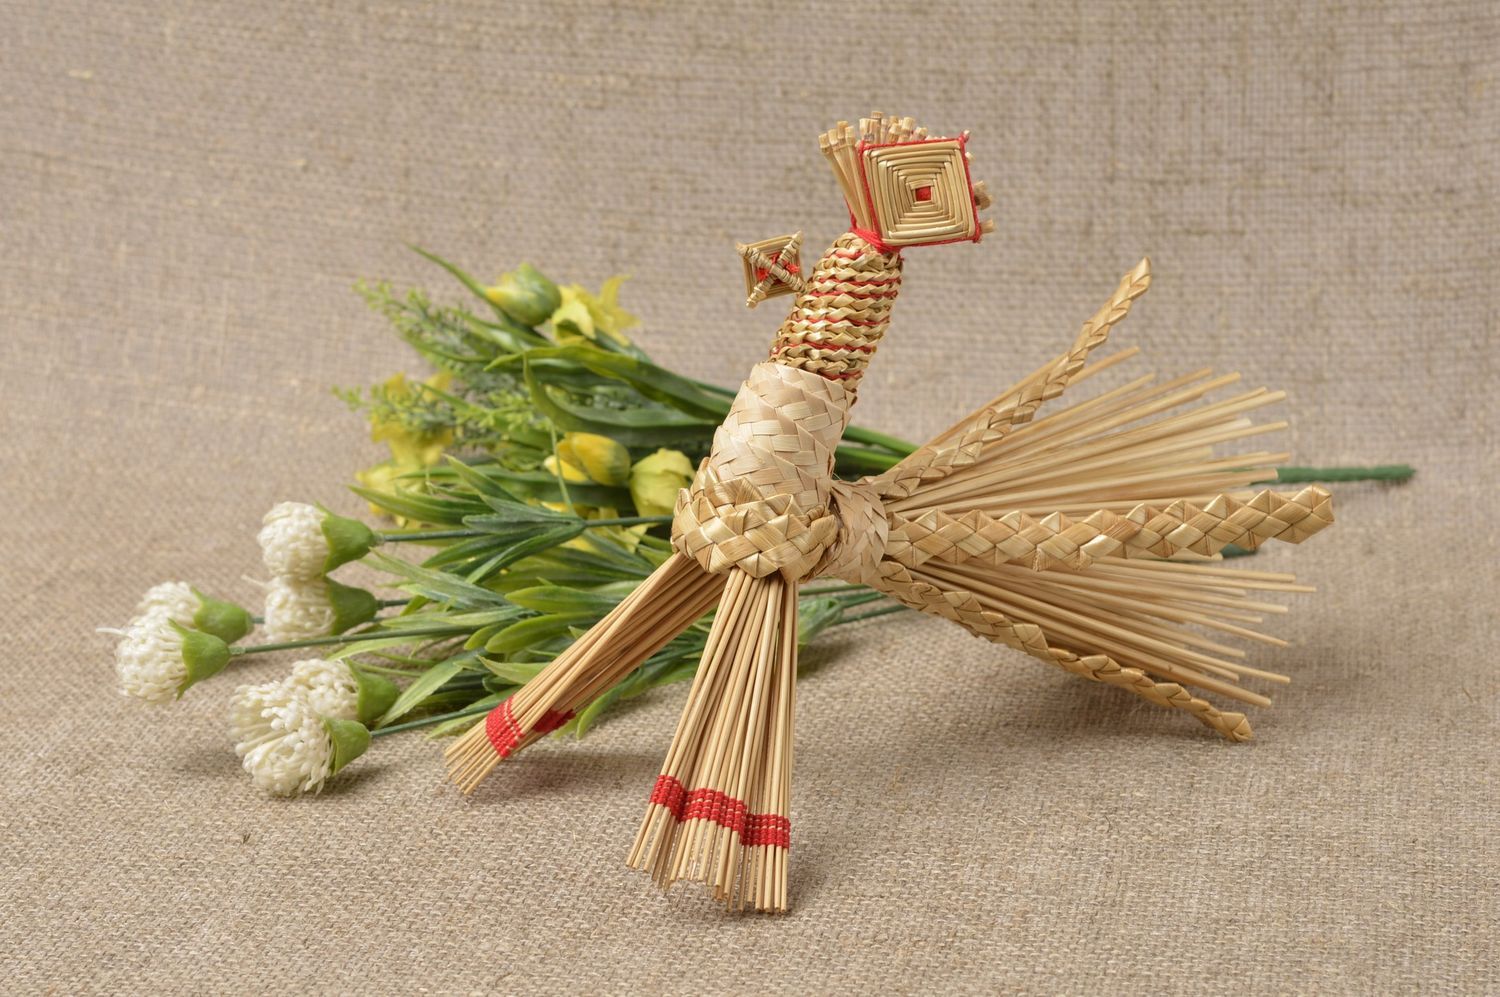 Handmade table decor unusual straw figurine natural eco friendly statuette photo 1